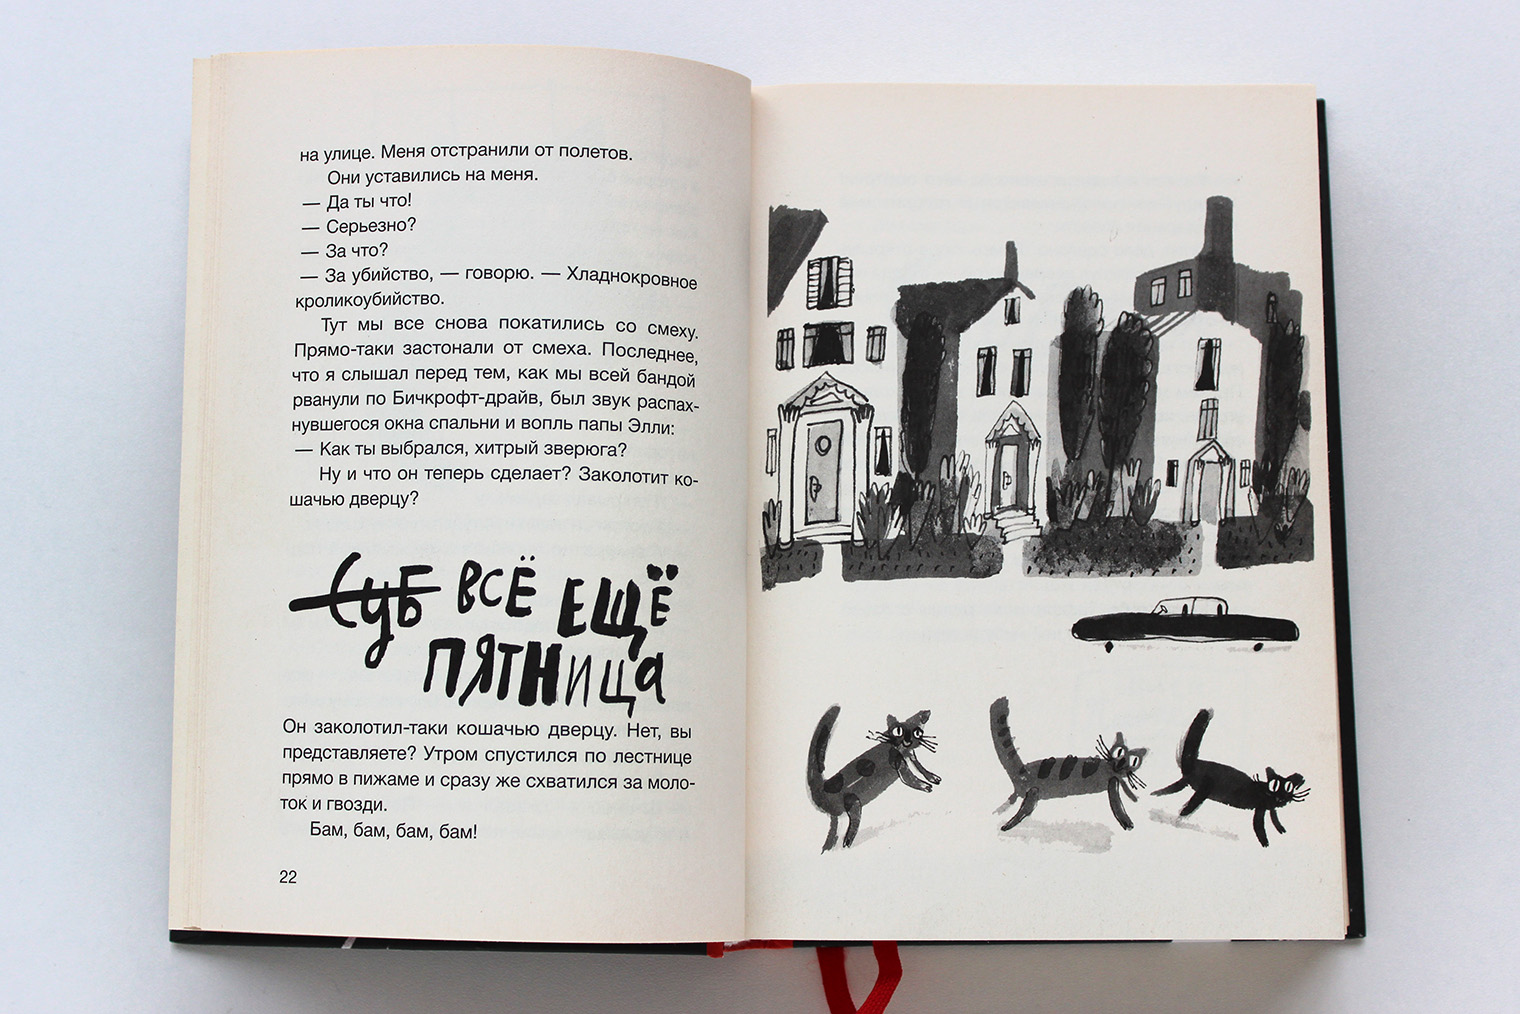 Простые, даже несколько примитивные иллюстрации Алисы Юфы отлично дополняют книгу и передают кошачьи эмоции